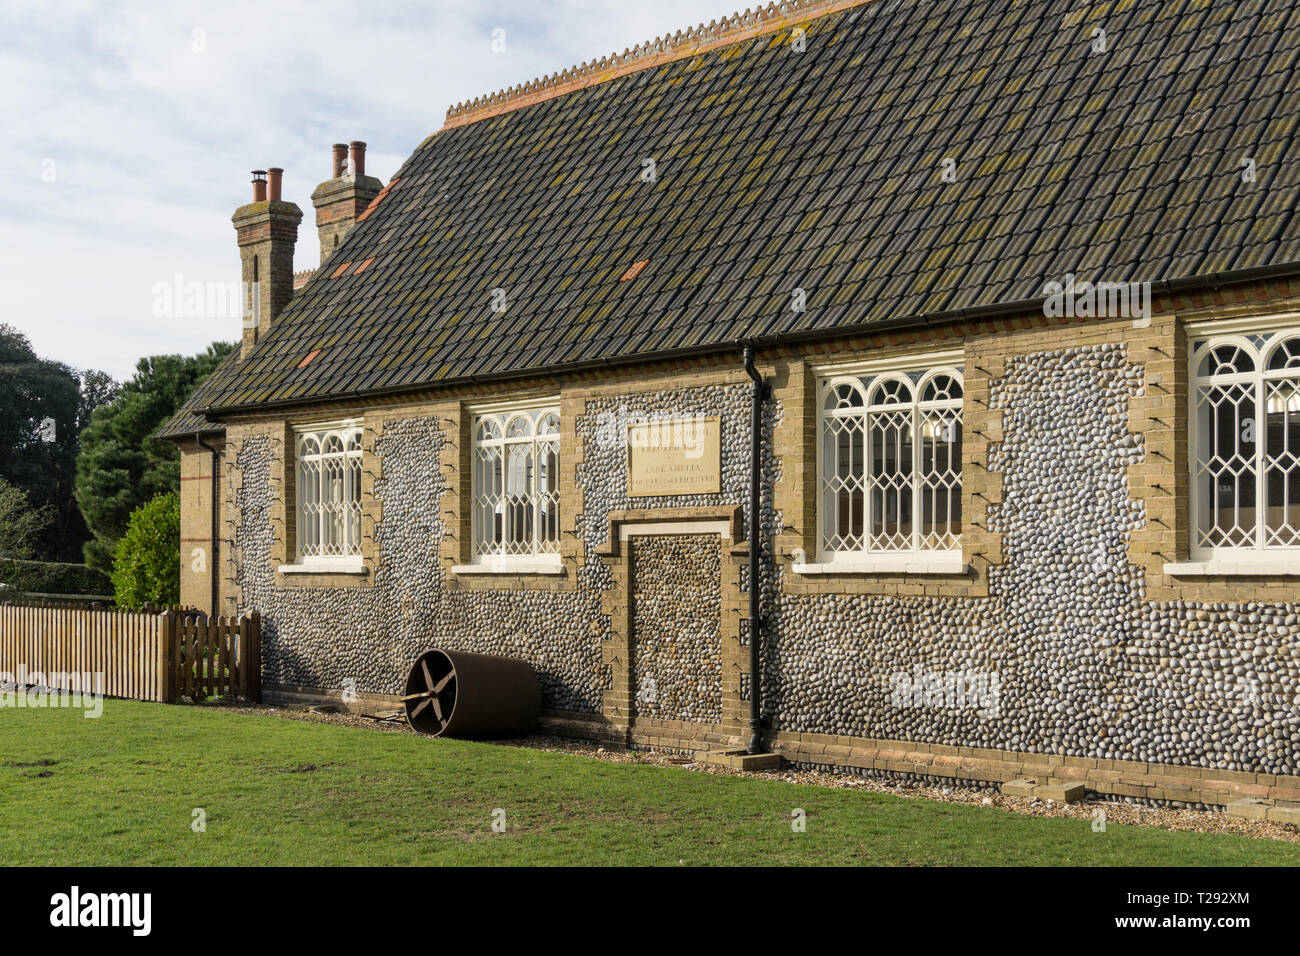 The Old School House in der Immobilien Dorf Holkham, North Norfolk, UK; jetzt die Heimat der Adnams Keller und Küche speichert Stockfoto